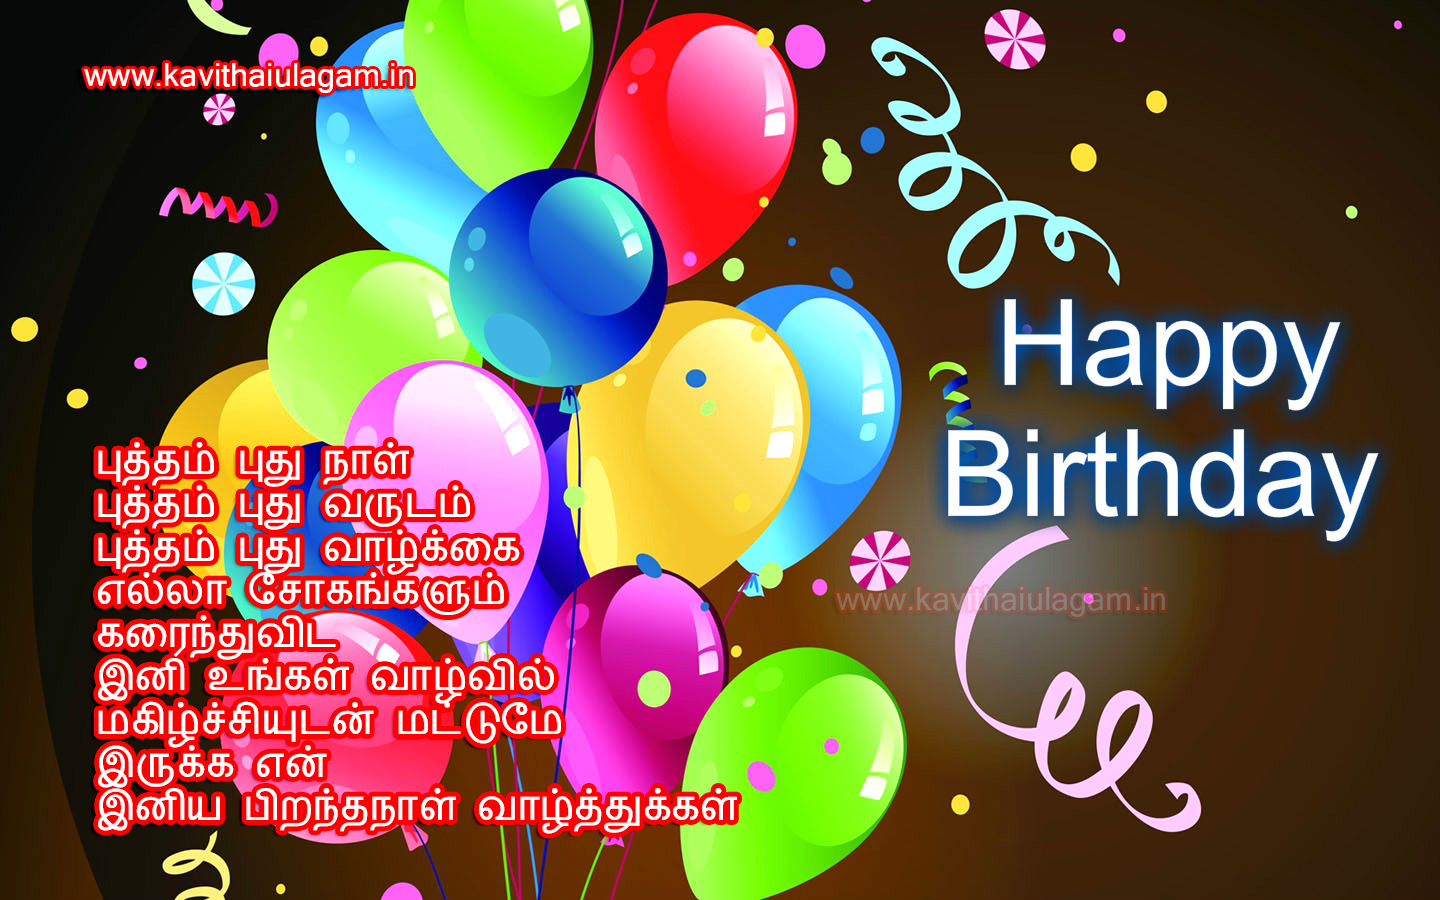 Best Friend Birthday Wishes Tamil Kavithai : 10 Best Birthday Wishes